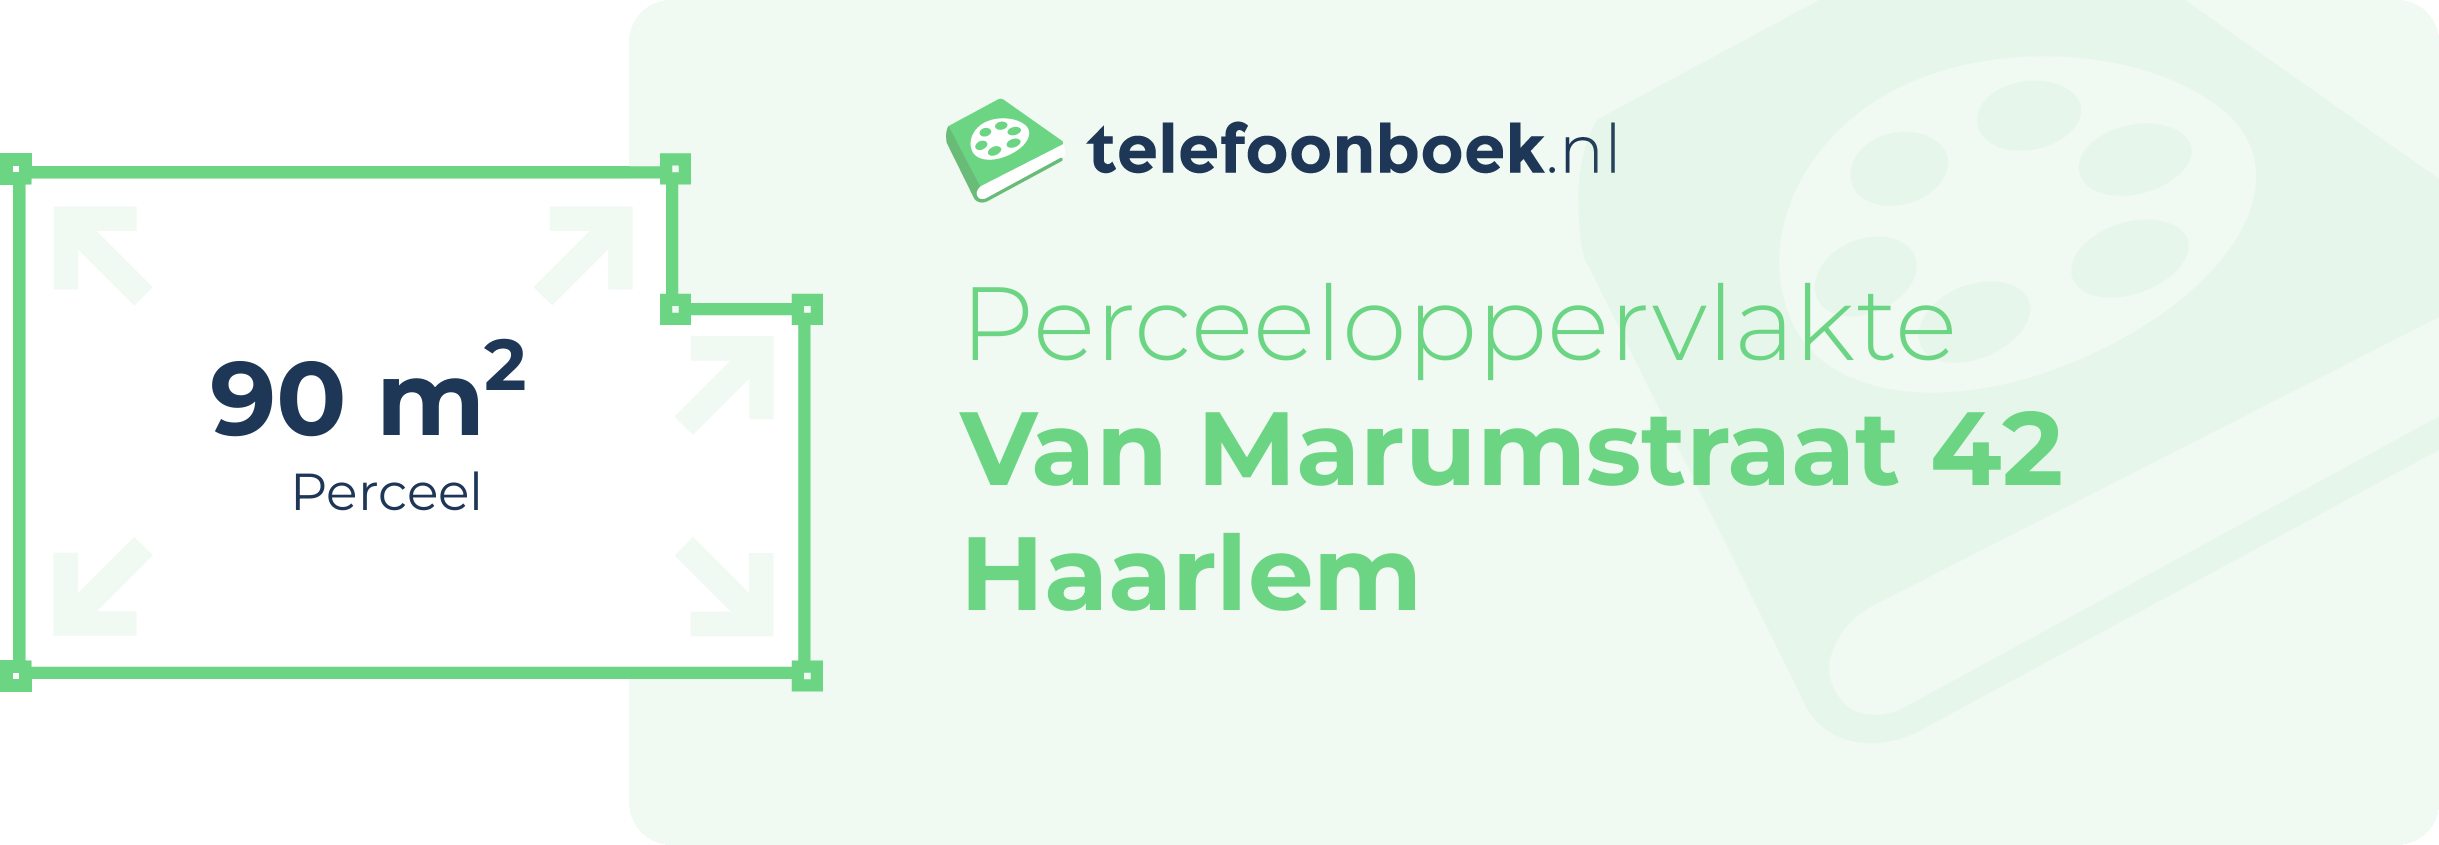 Perceeloppervlakte Van Marumstraat 42 Haarlem